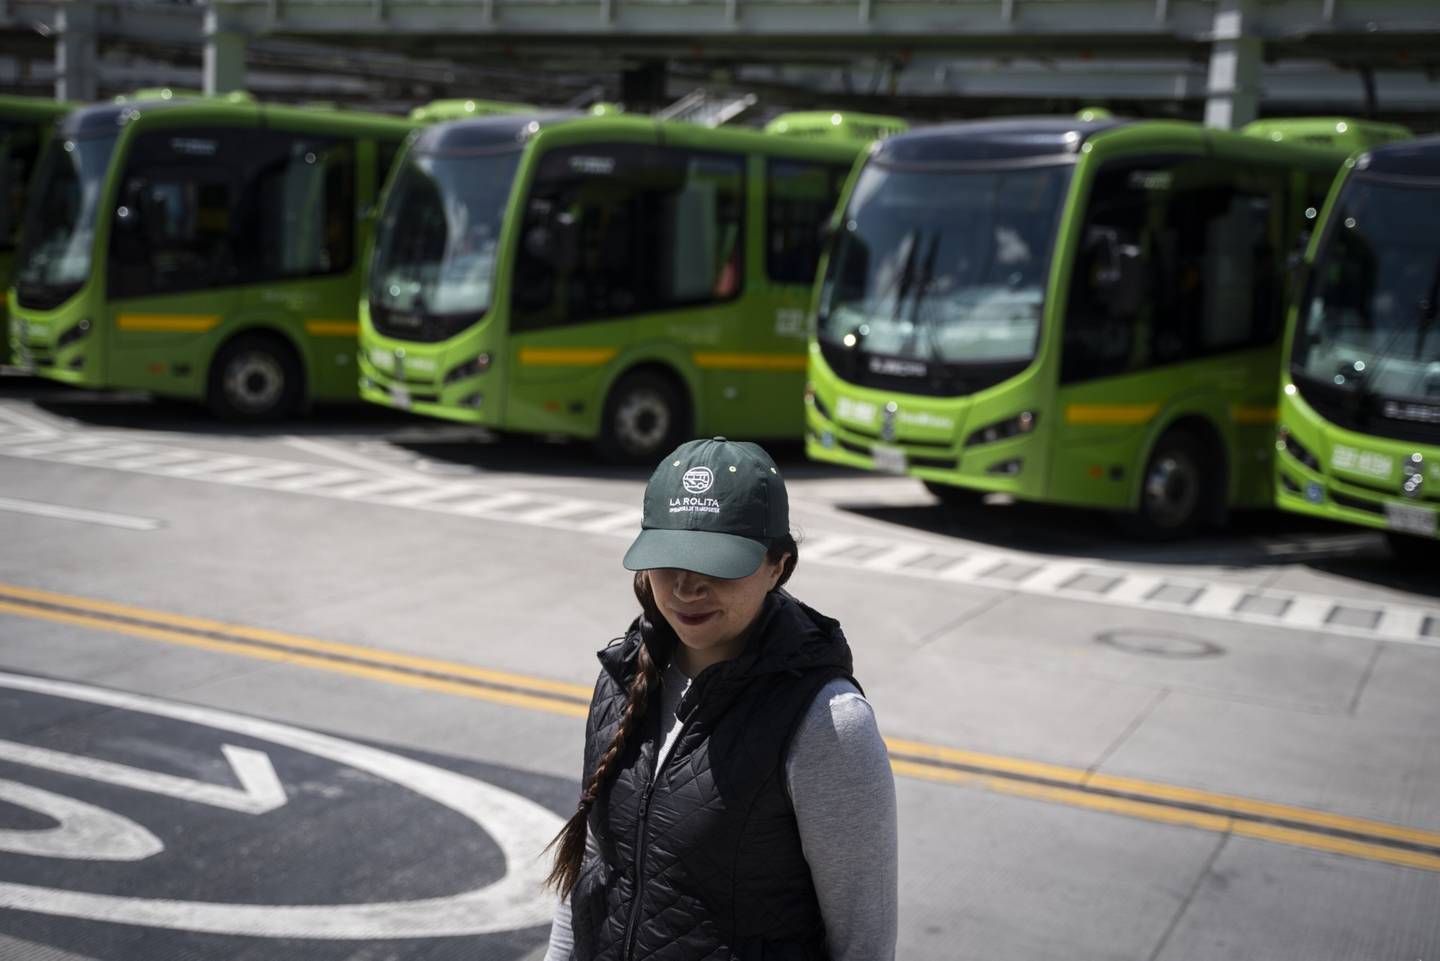 Conductoras de buses en Colombia reforman el transporte público / Fotógrafa: Nathalia Angarita/Bloomberg